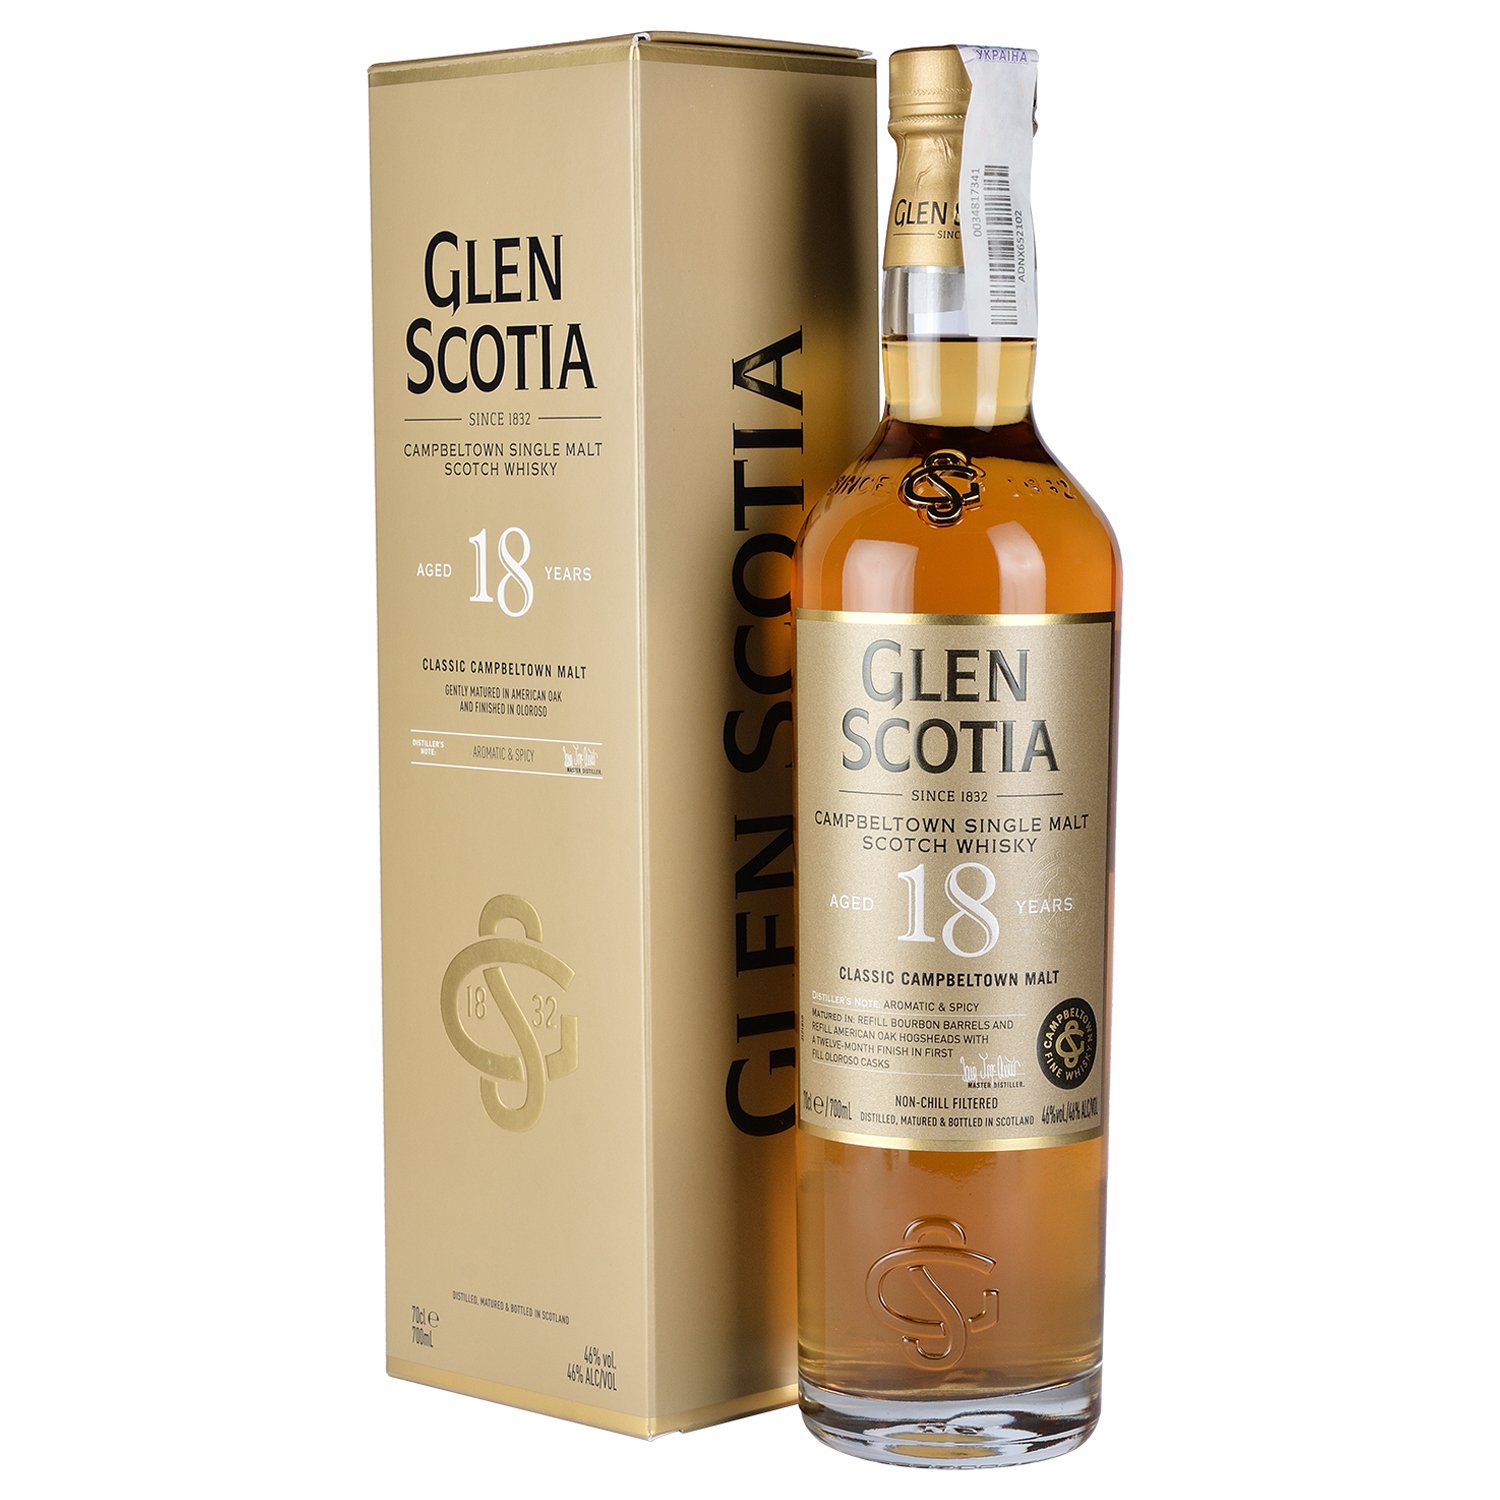 Віскі Glen Scotia Single Malt Scotch Whisky 18 yo, у подарунковій упаковці, 46%, 0,7 л - фото 1